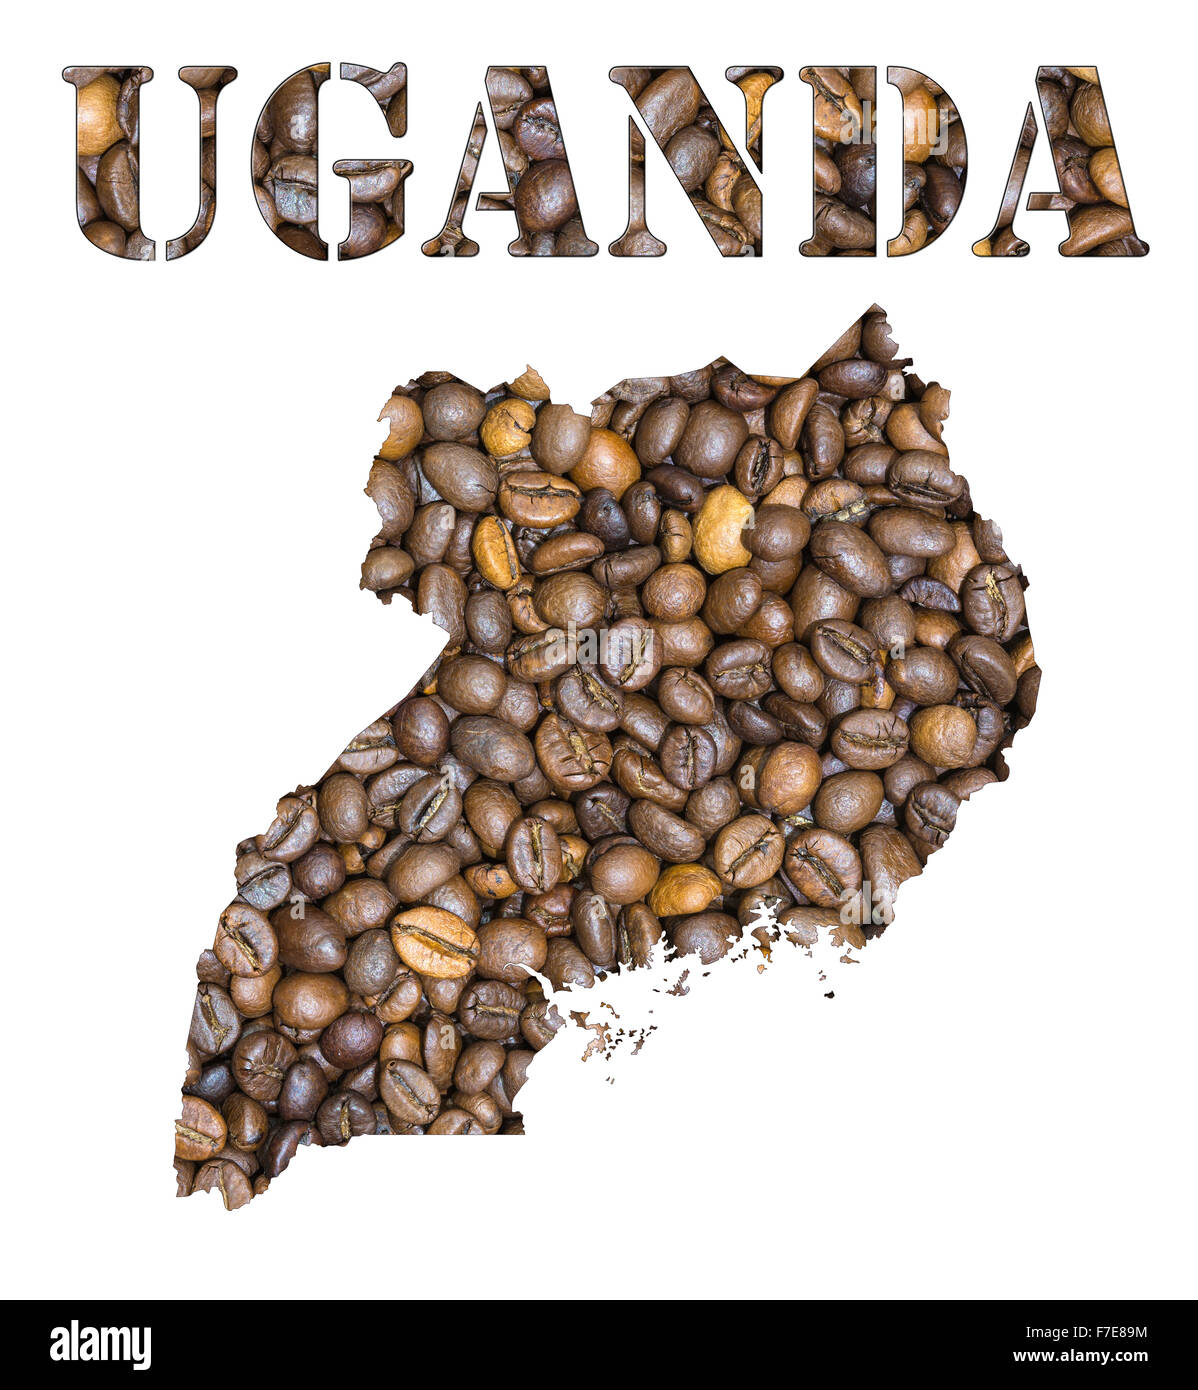 Roasted Brown i chicchi di caffè lo sfondo con la forma della parola in Uganda e il paese mappa geografica contorno. Immagine isolata Foto Stock